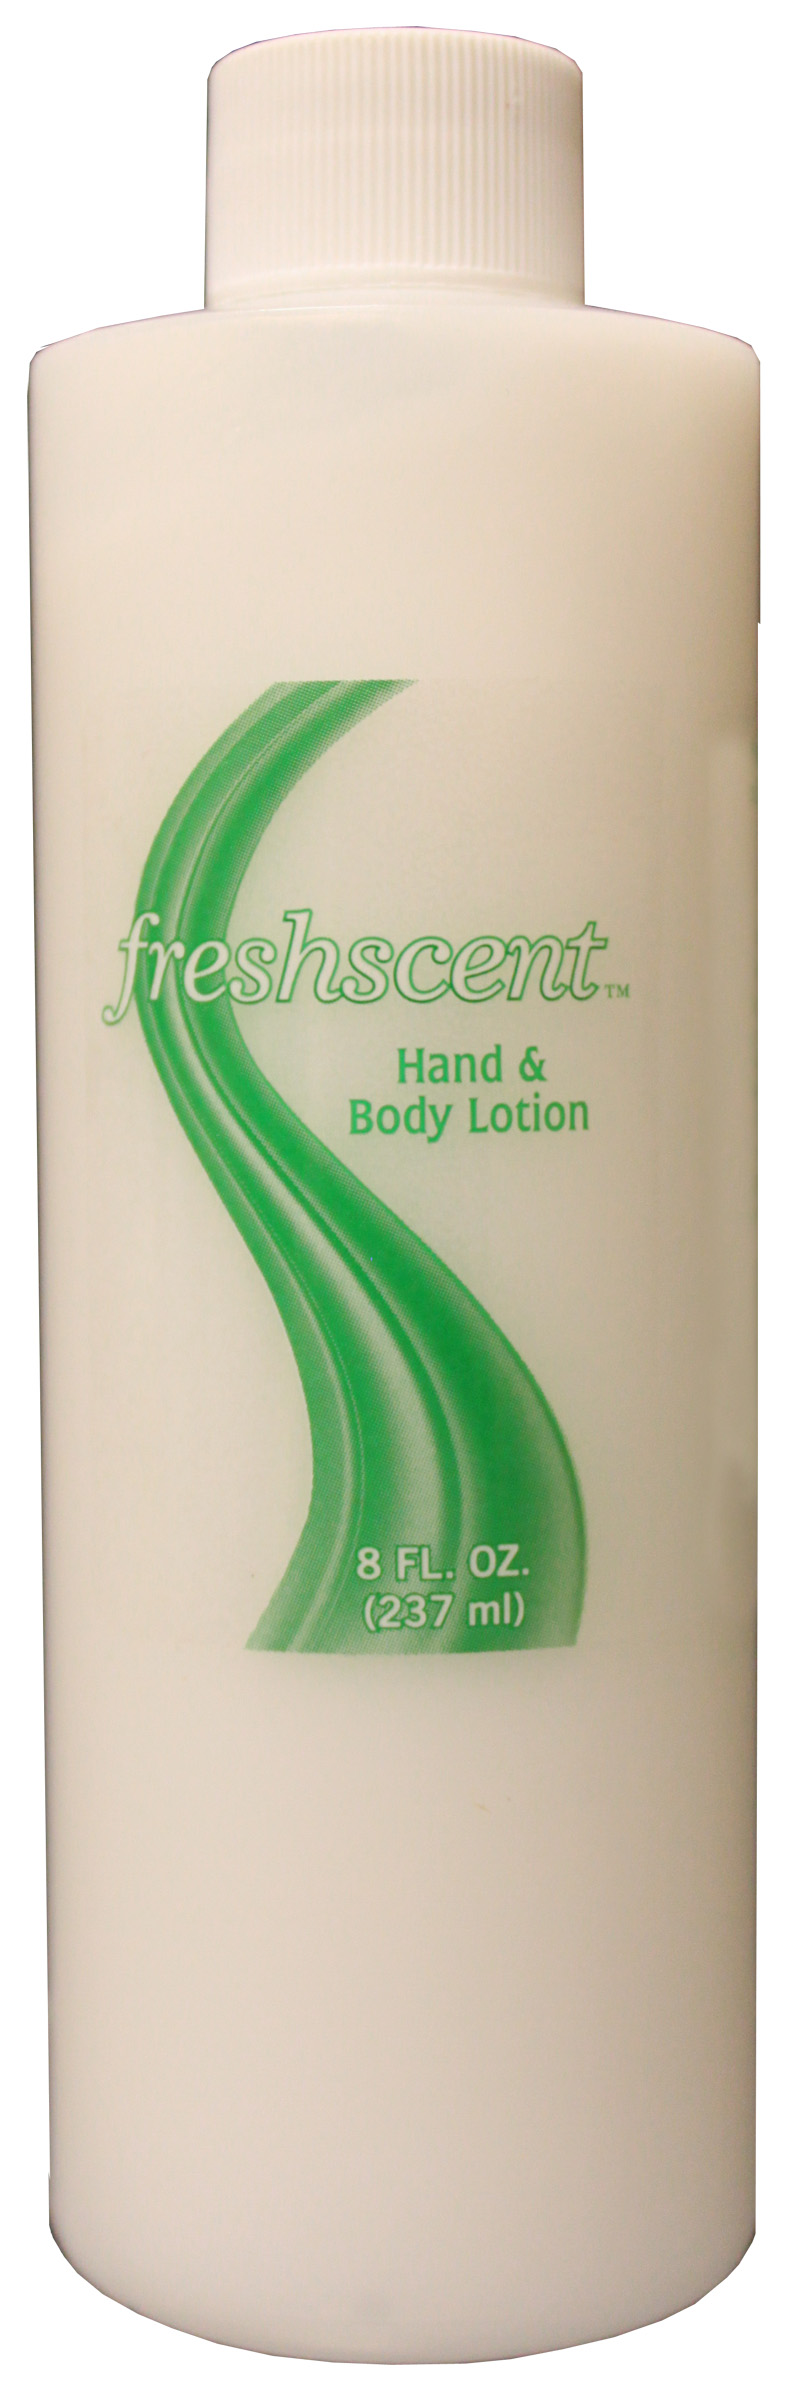 Freshscent 8 oz. Hand & Body Lotion